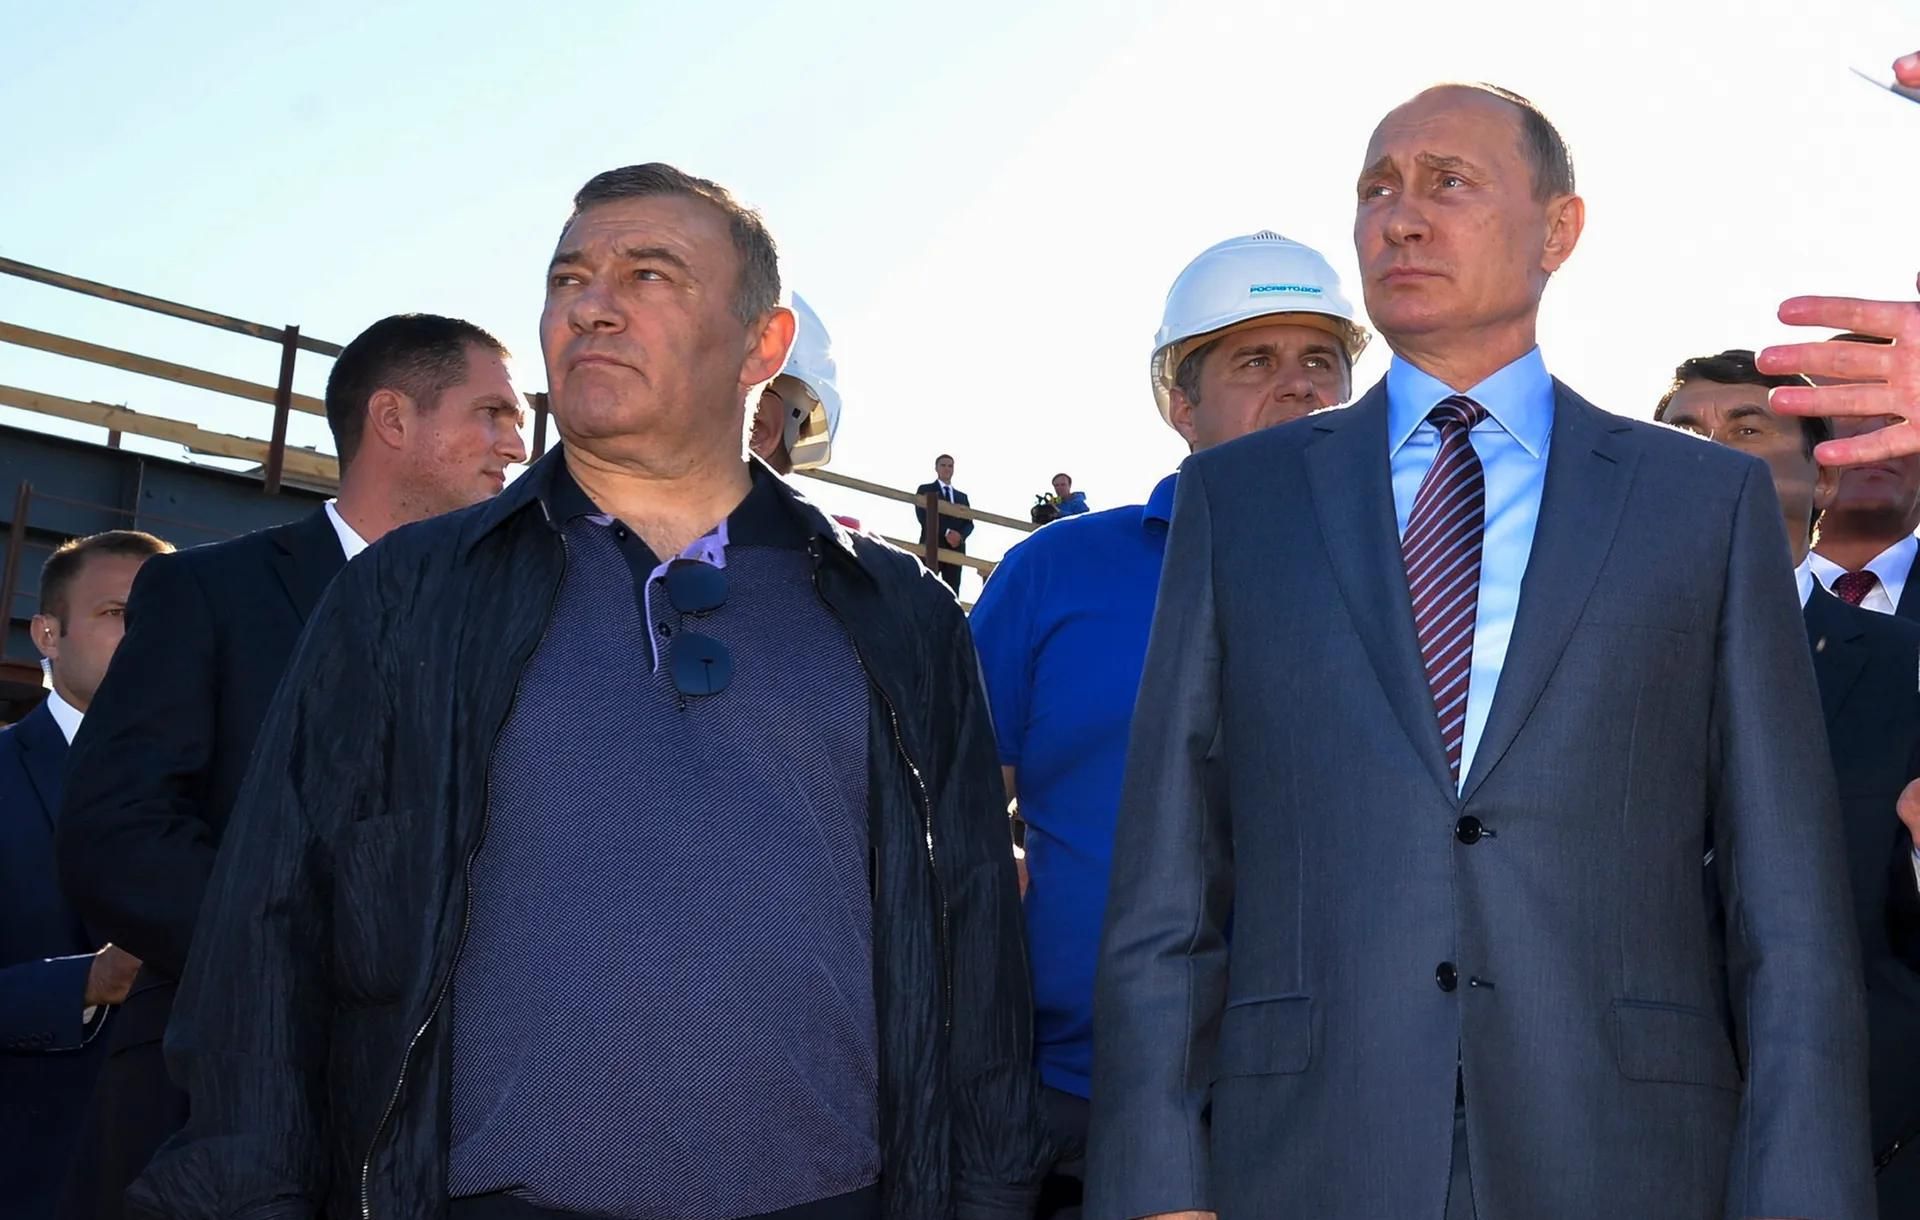 המיליארדר ארקדי רוטנברג (משמאל) ונשיא רוסיה ולדימיר פוטין עומדים בפני סנקציות בעקבות הפלישה לאוקראינה

© אלכסיי דרוז'ינין/ספוטניק, הקרמלין, צילום מאגר קבצים דרך AP